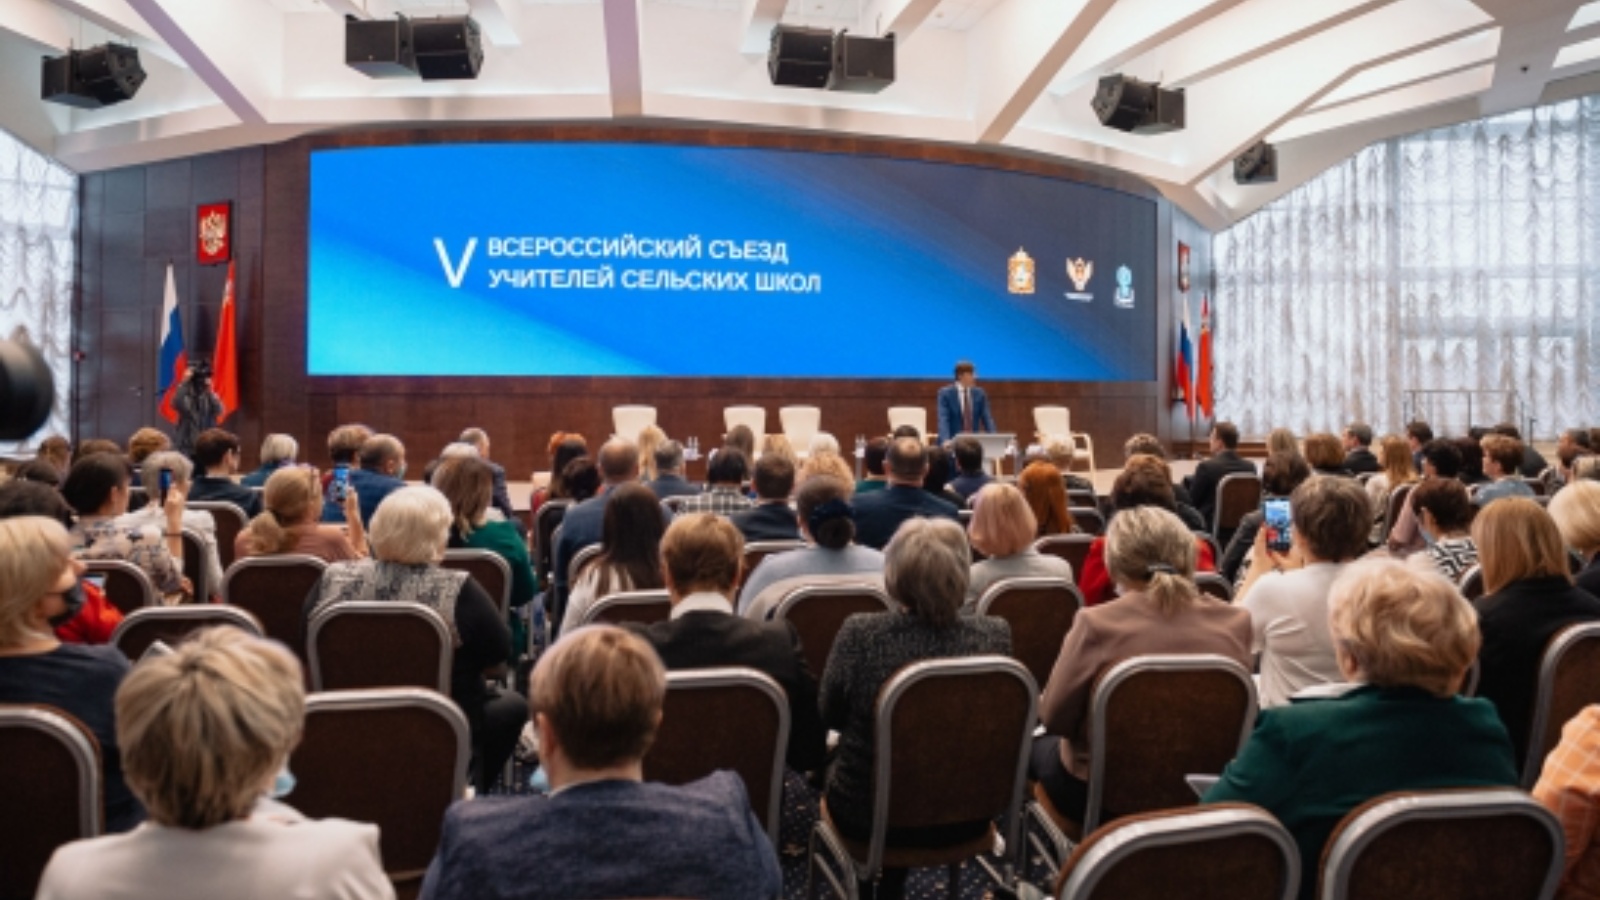 В Московской области стартовал Всероссийский съезд учителей сельских школ